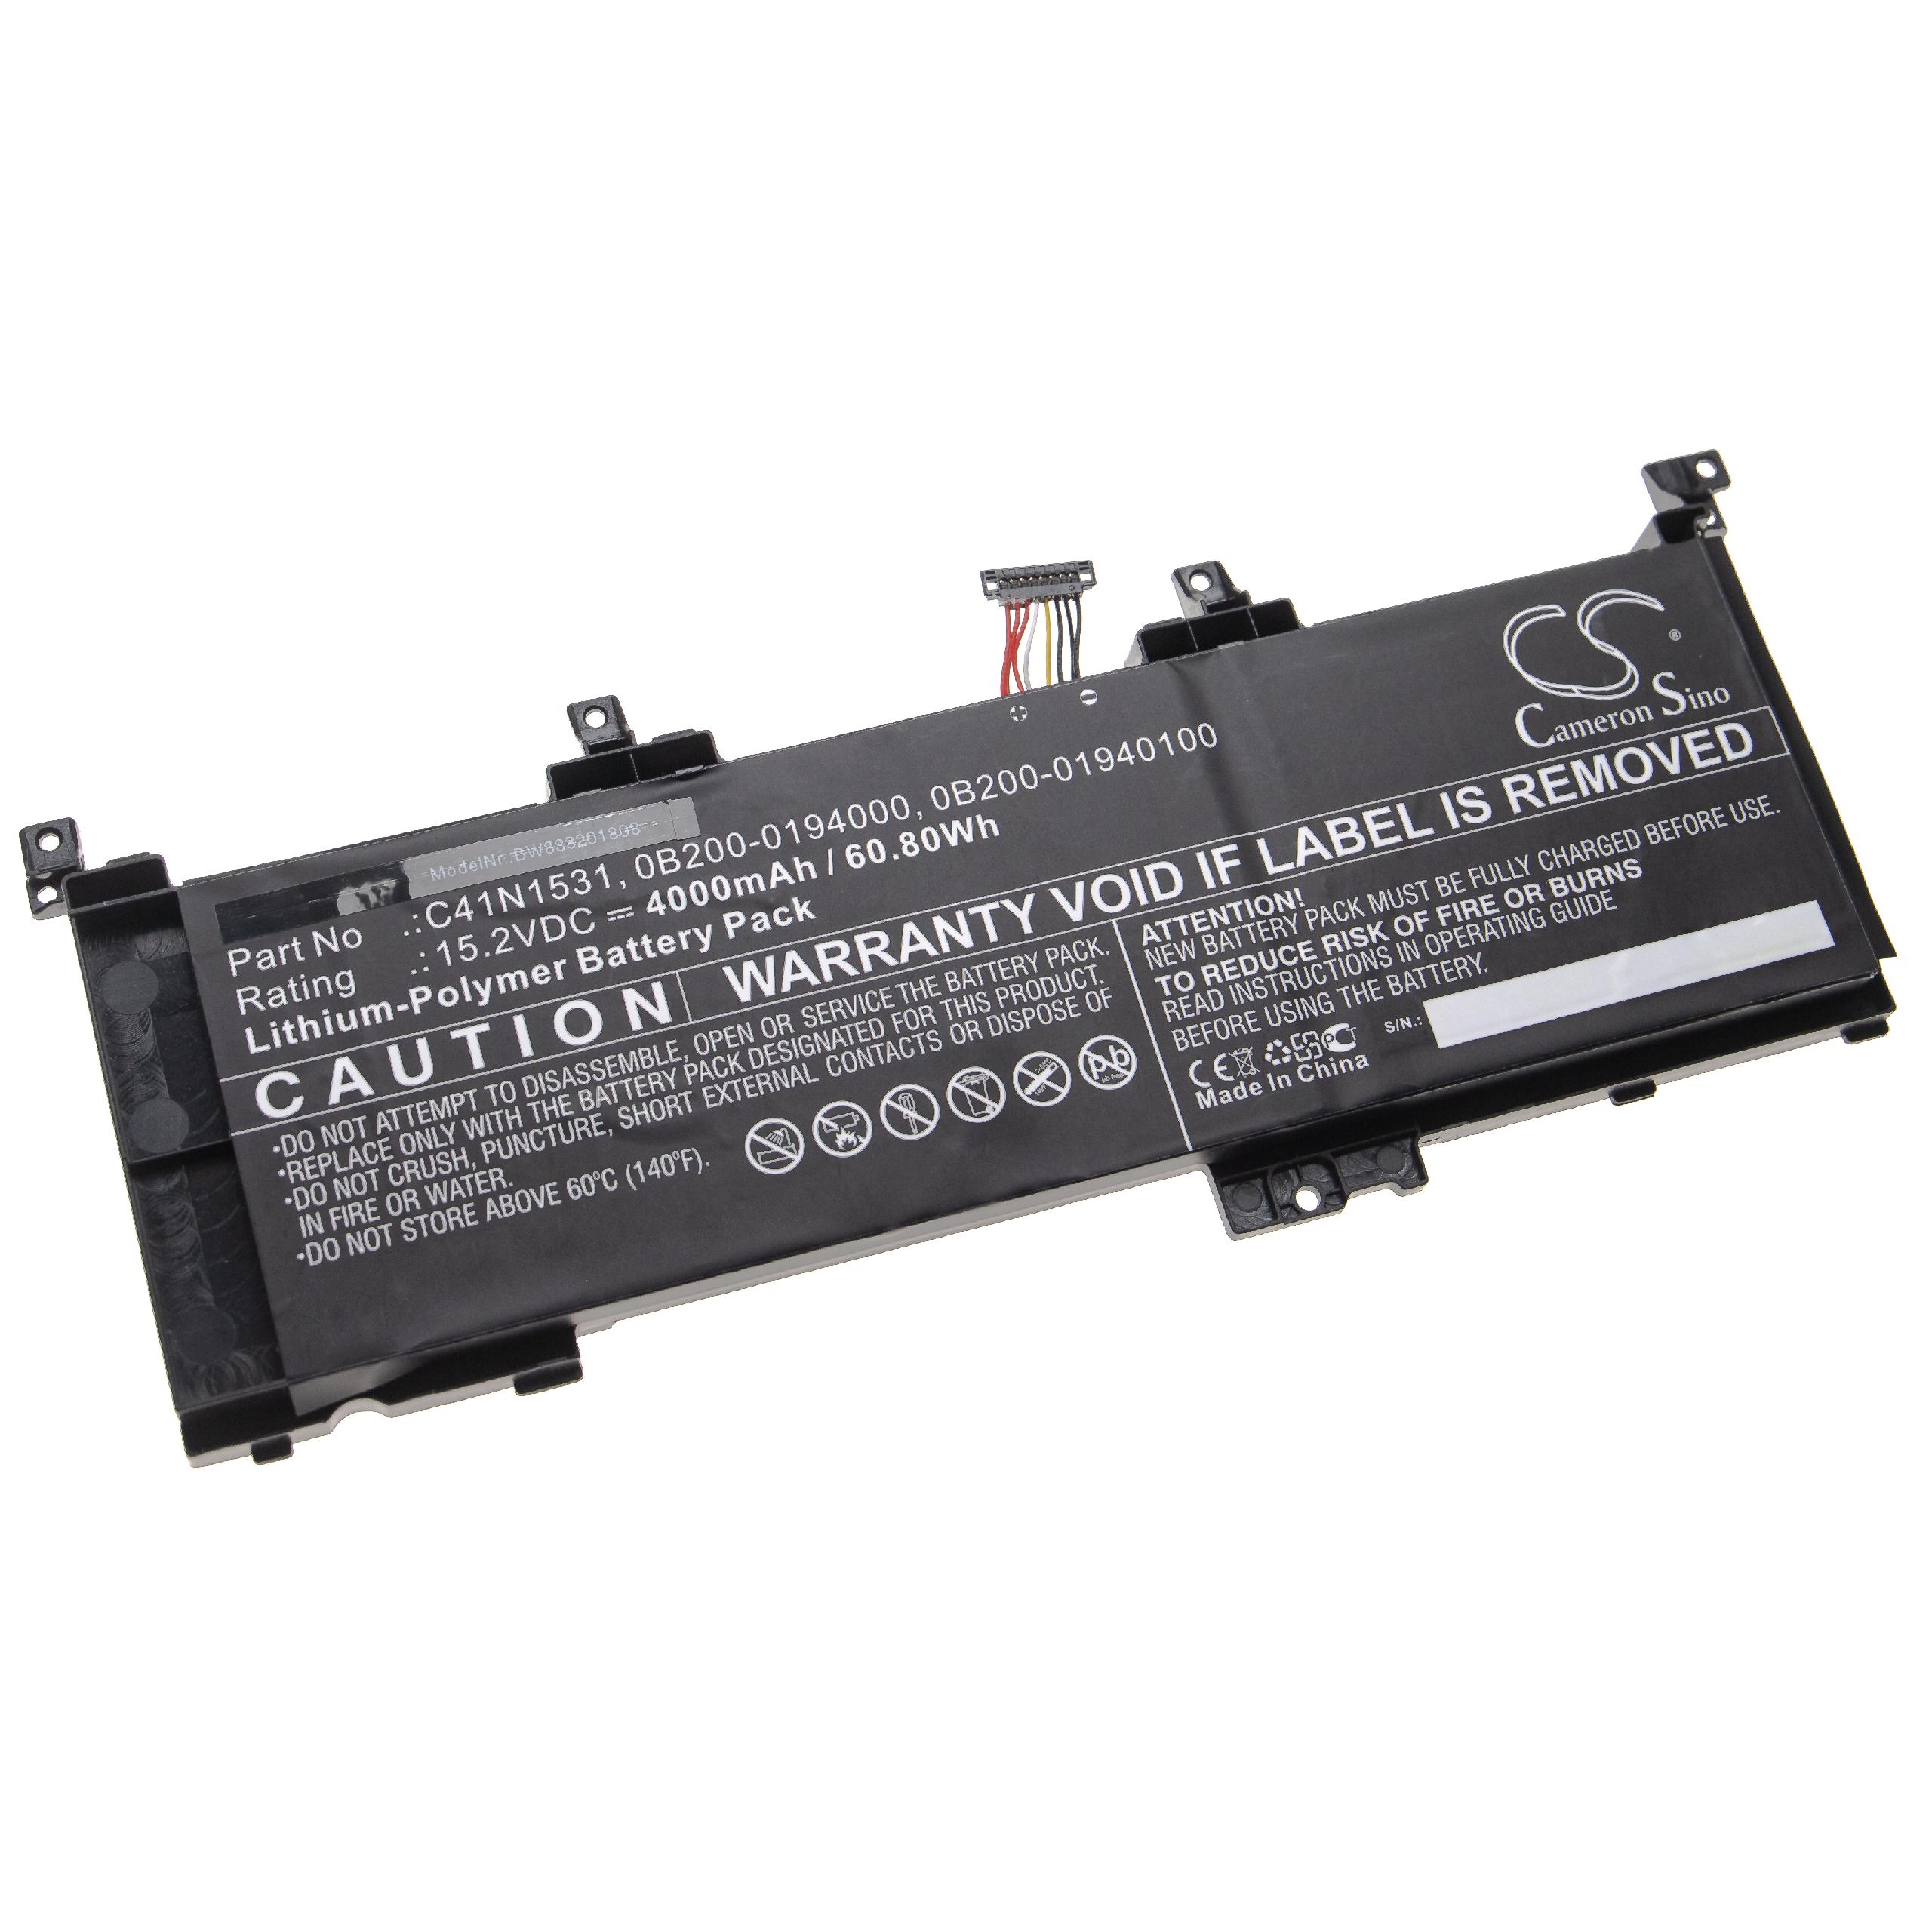 Batterie remplace Asus 0B200-0194000, 0B200-01940100 pour ordinateur portable - 4000mAh 15,2V Li-polymère